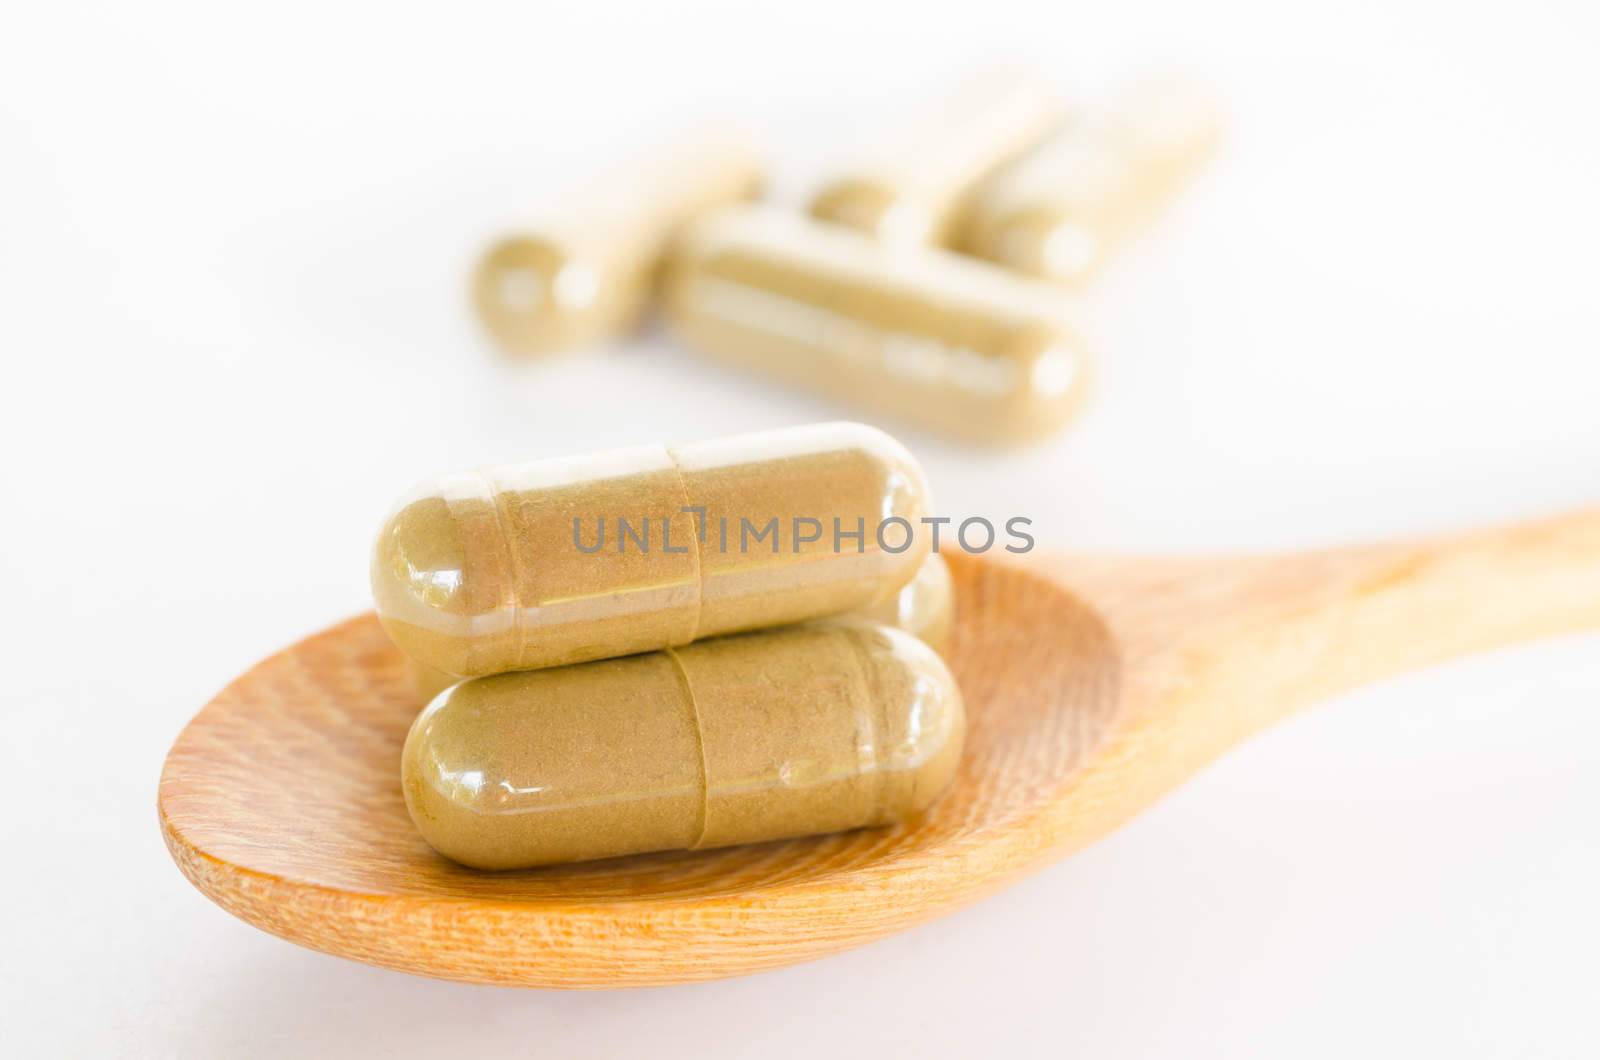 herbal drug capsule on wooden spoon by Gamjai